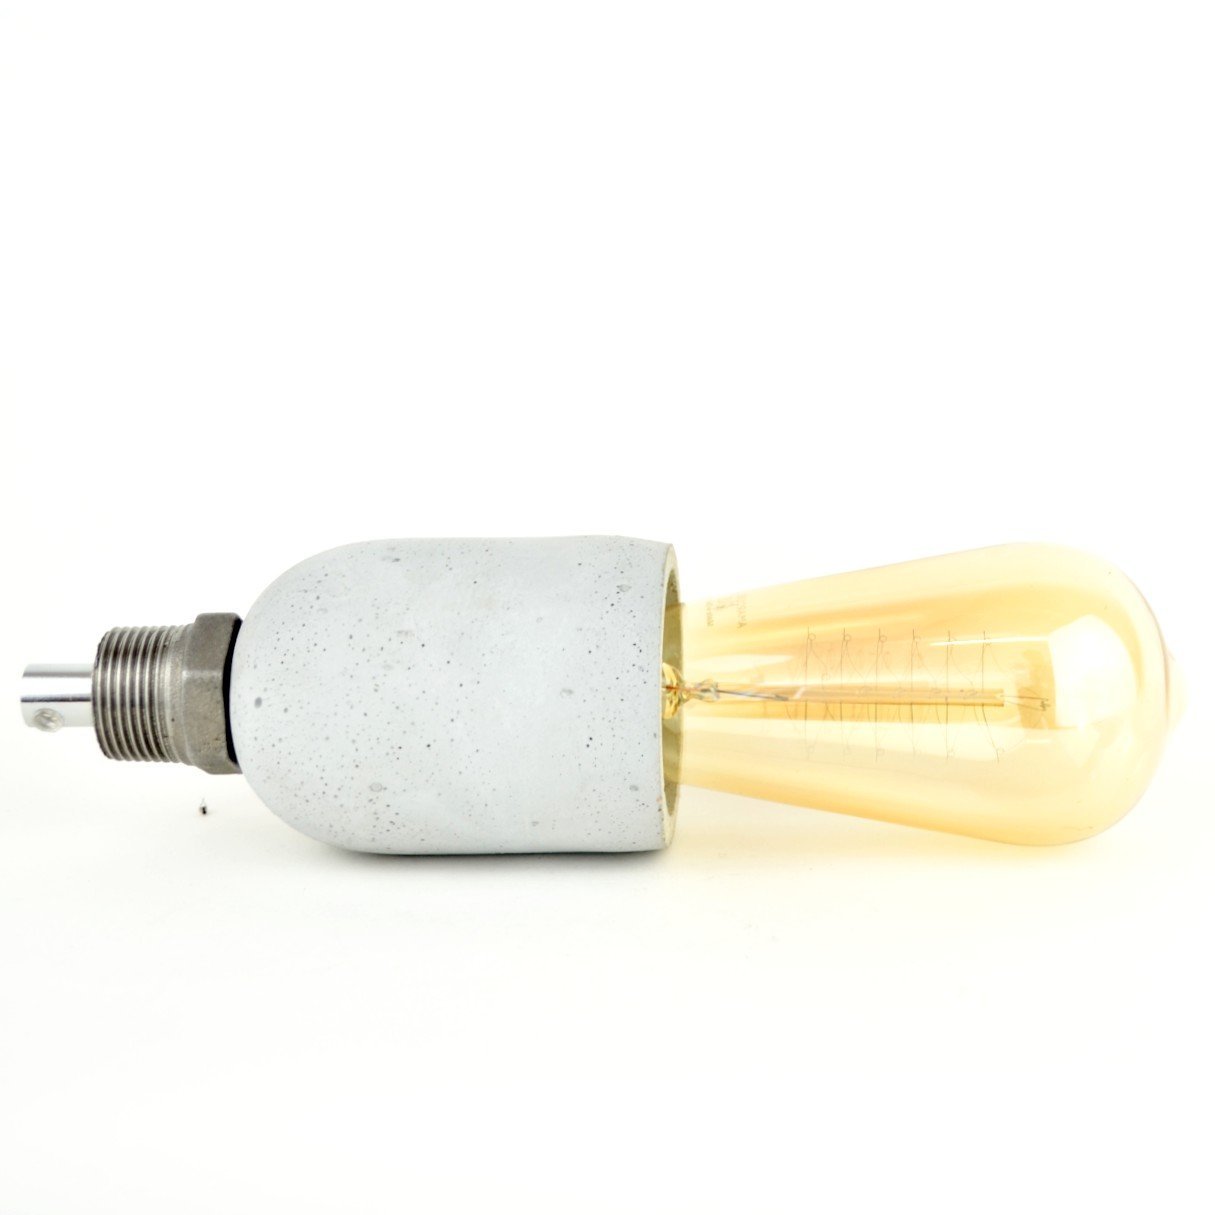 E27 Douille d'Ampoule en Céramique, 4 pcs E27 Douille de Lampe Support Base  pour Lampe